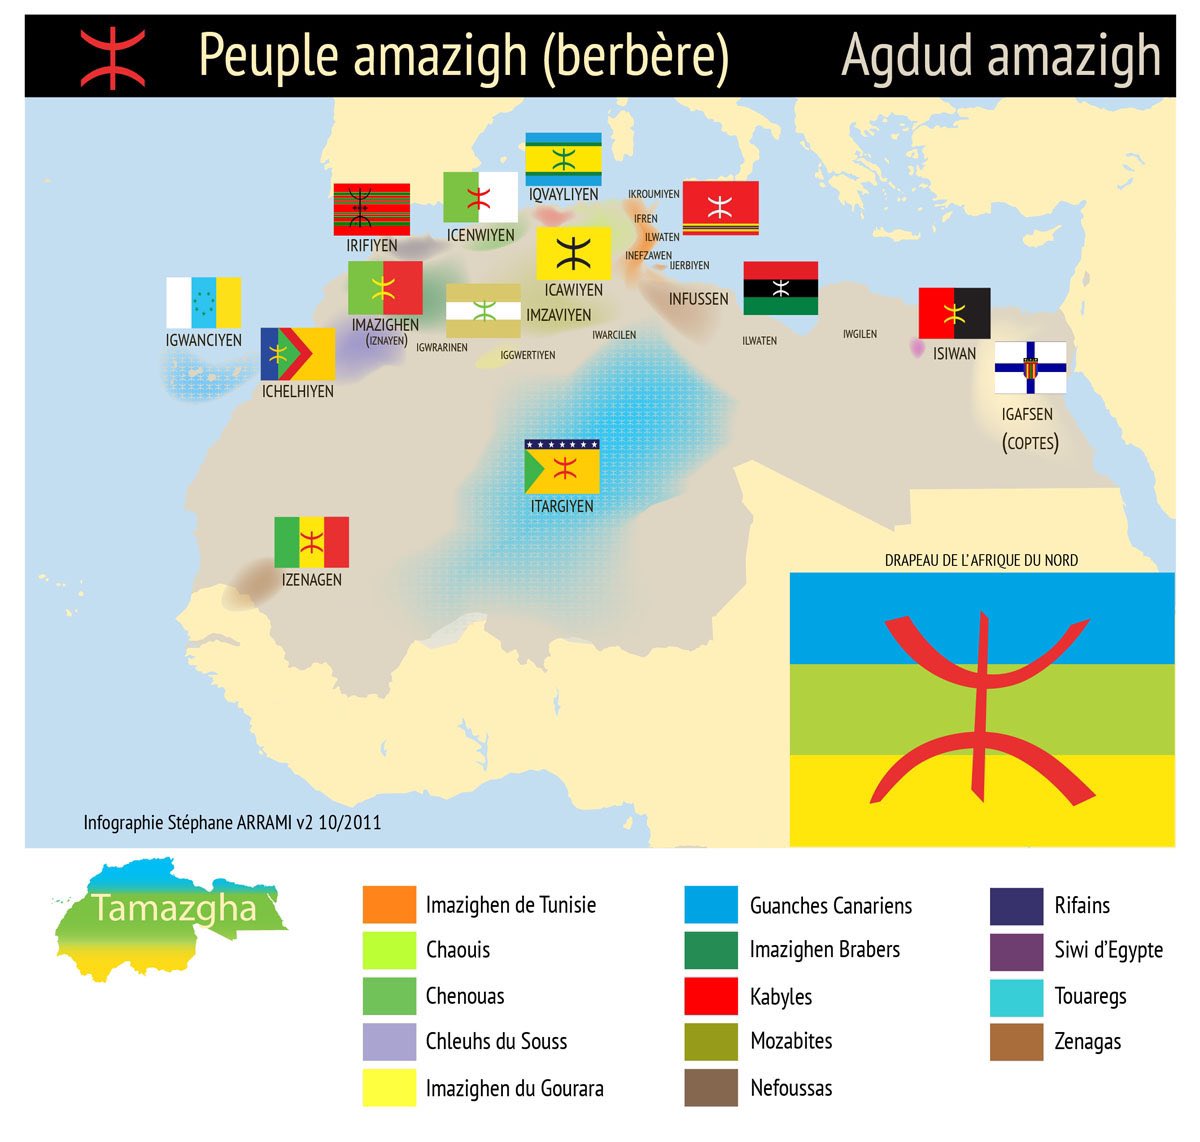 Et donc je vais me focaliser sur lz maroc, pcq c le pays où la communauté amazigh y est la plus cosmopolite